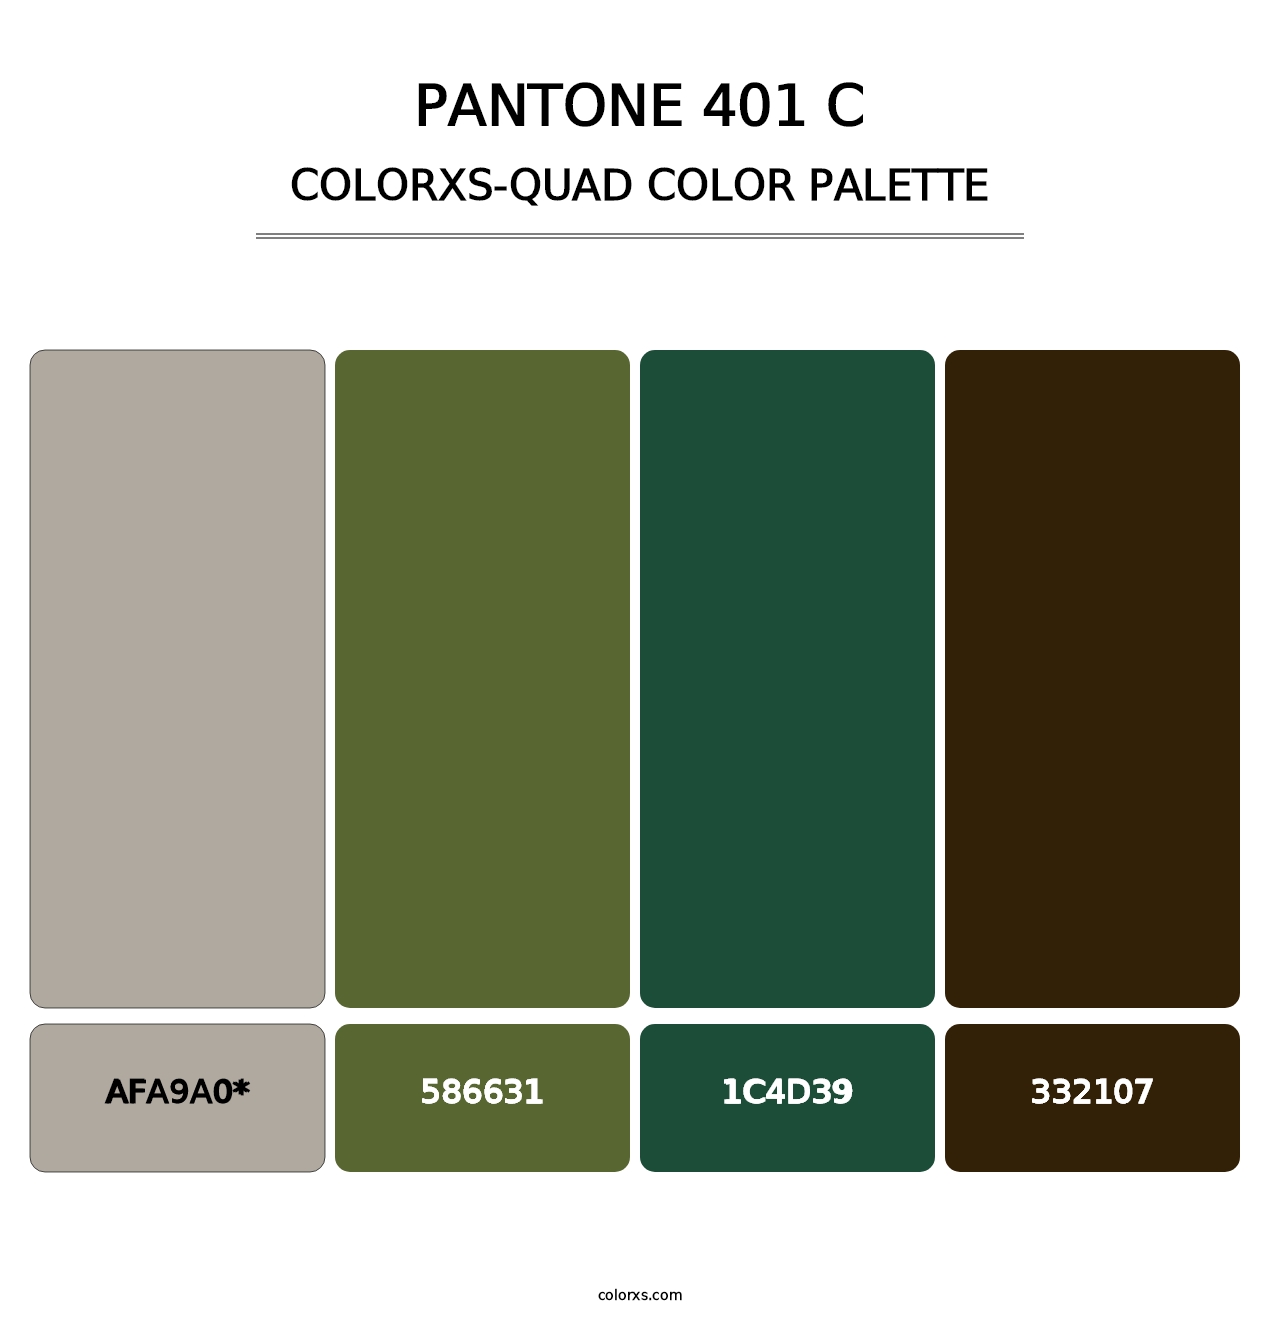 PANTONE 401 C - Colorxs Quad Palette